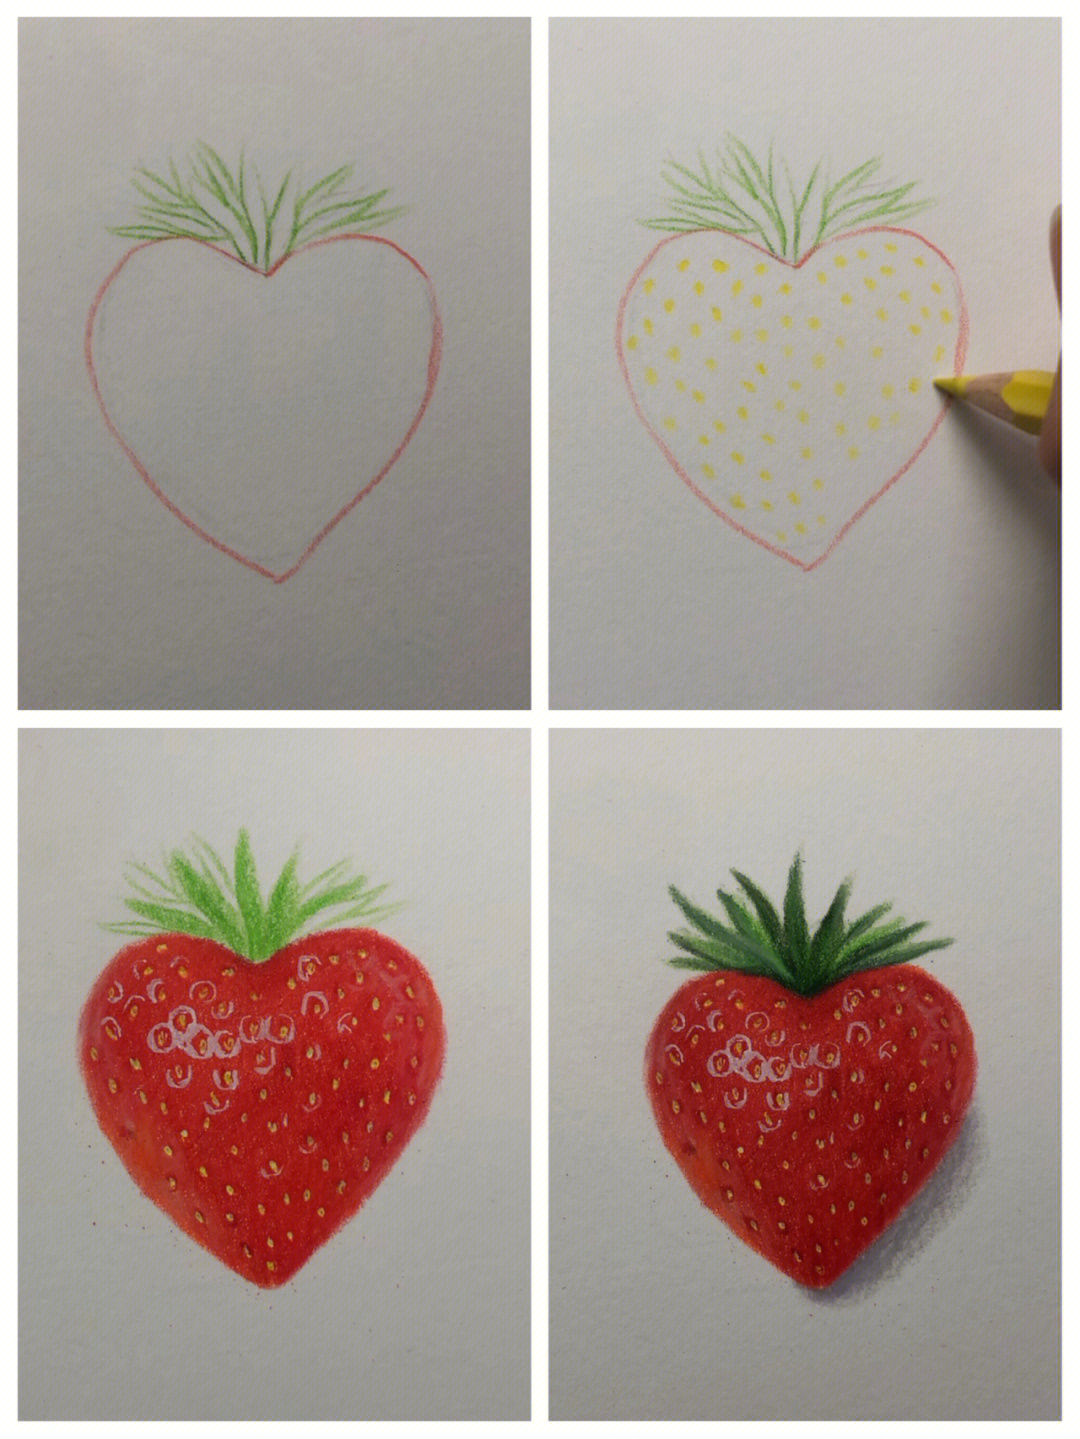 草莓图画简易画画图片